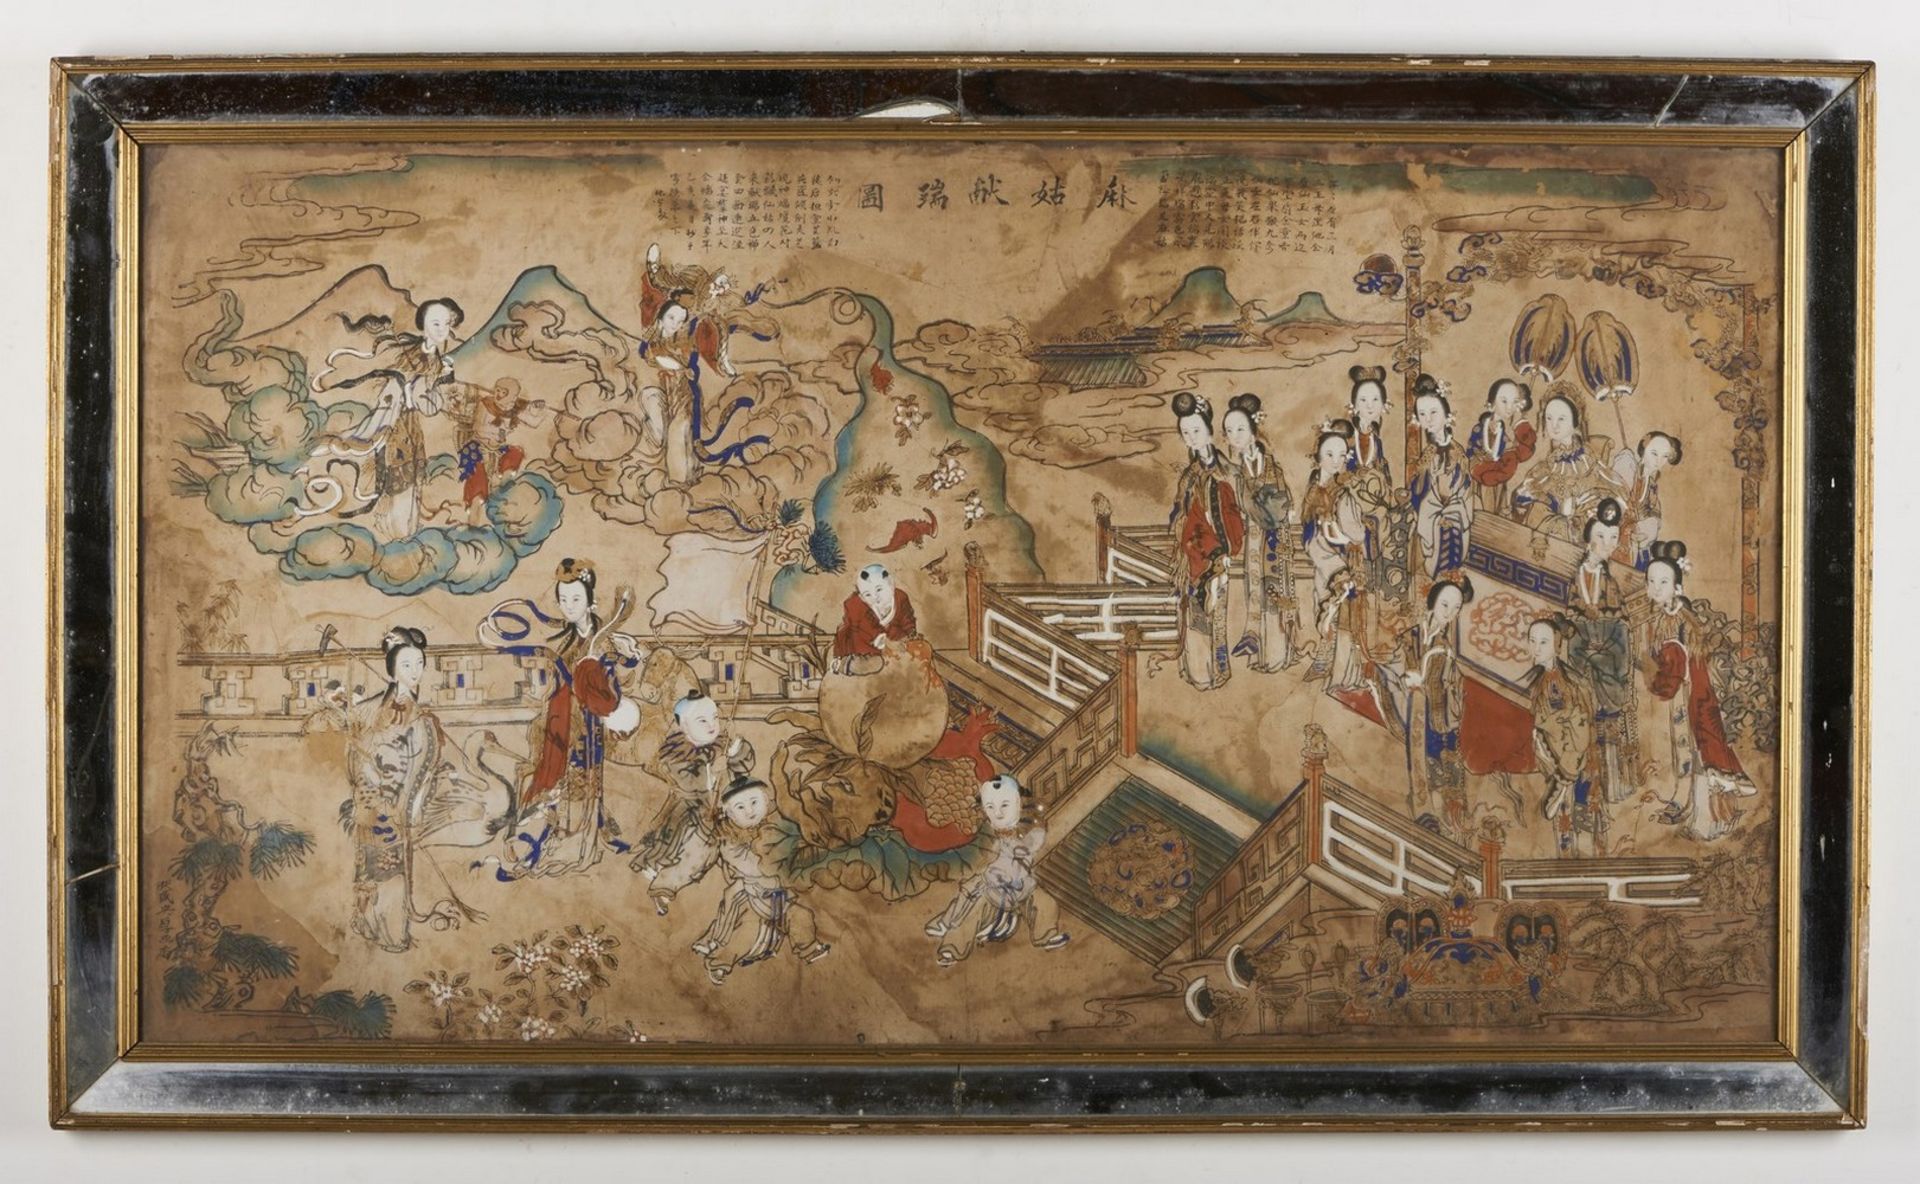 Arte Cinese Ma Gu Xian Shou Tu (Magu offers longevity)Signed Sheng YanghouChina, Qing dynasty,18th